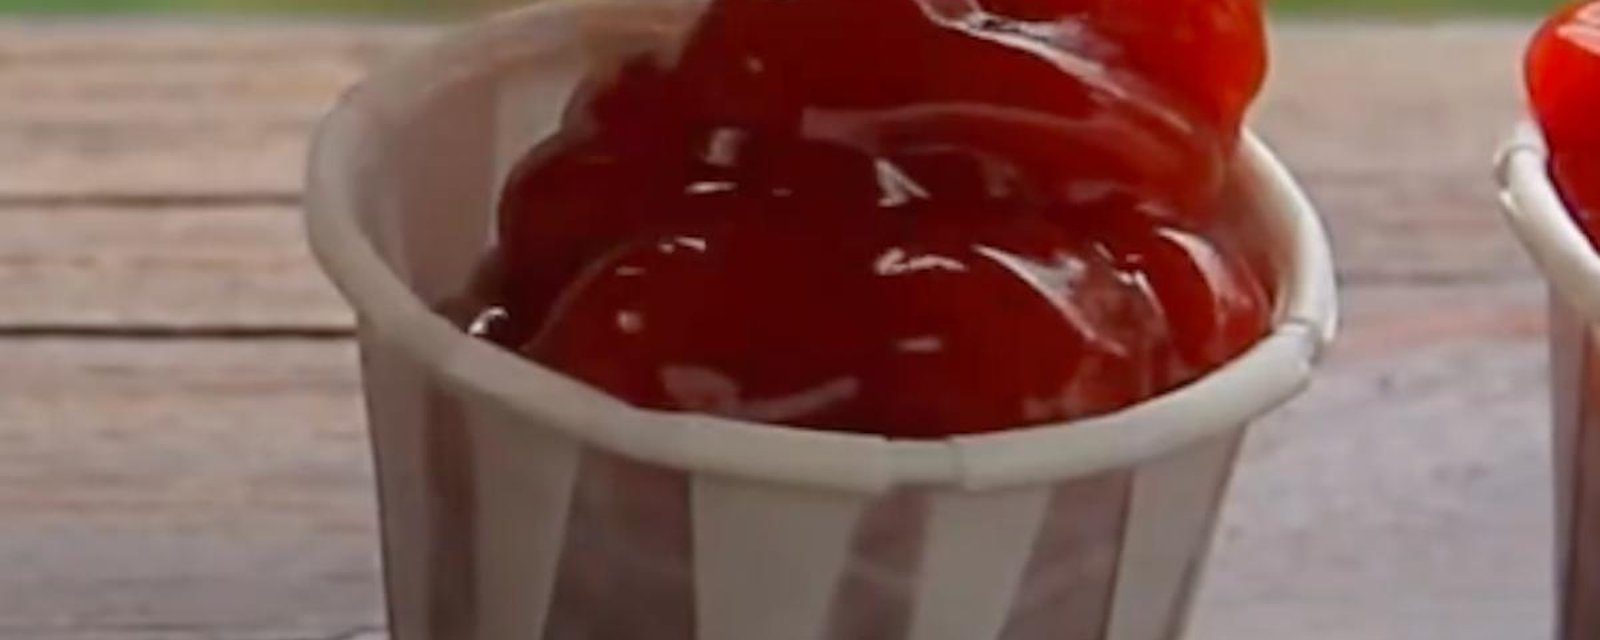 Voici comment utiliser correctement les gobelets de ketchup